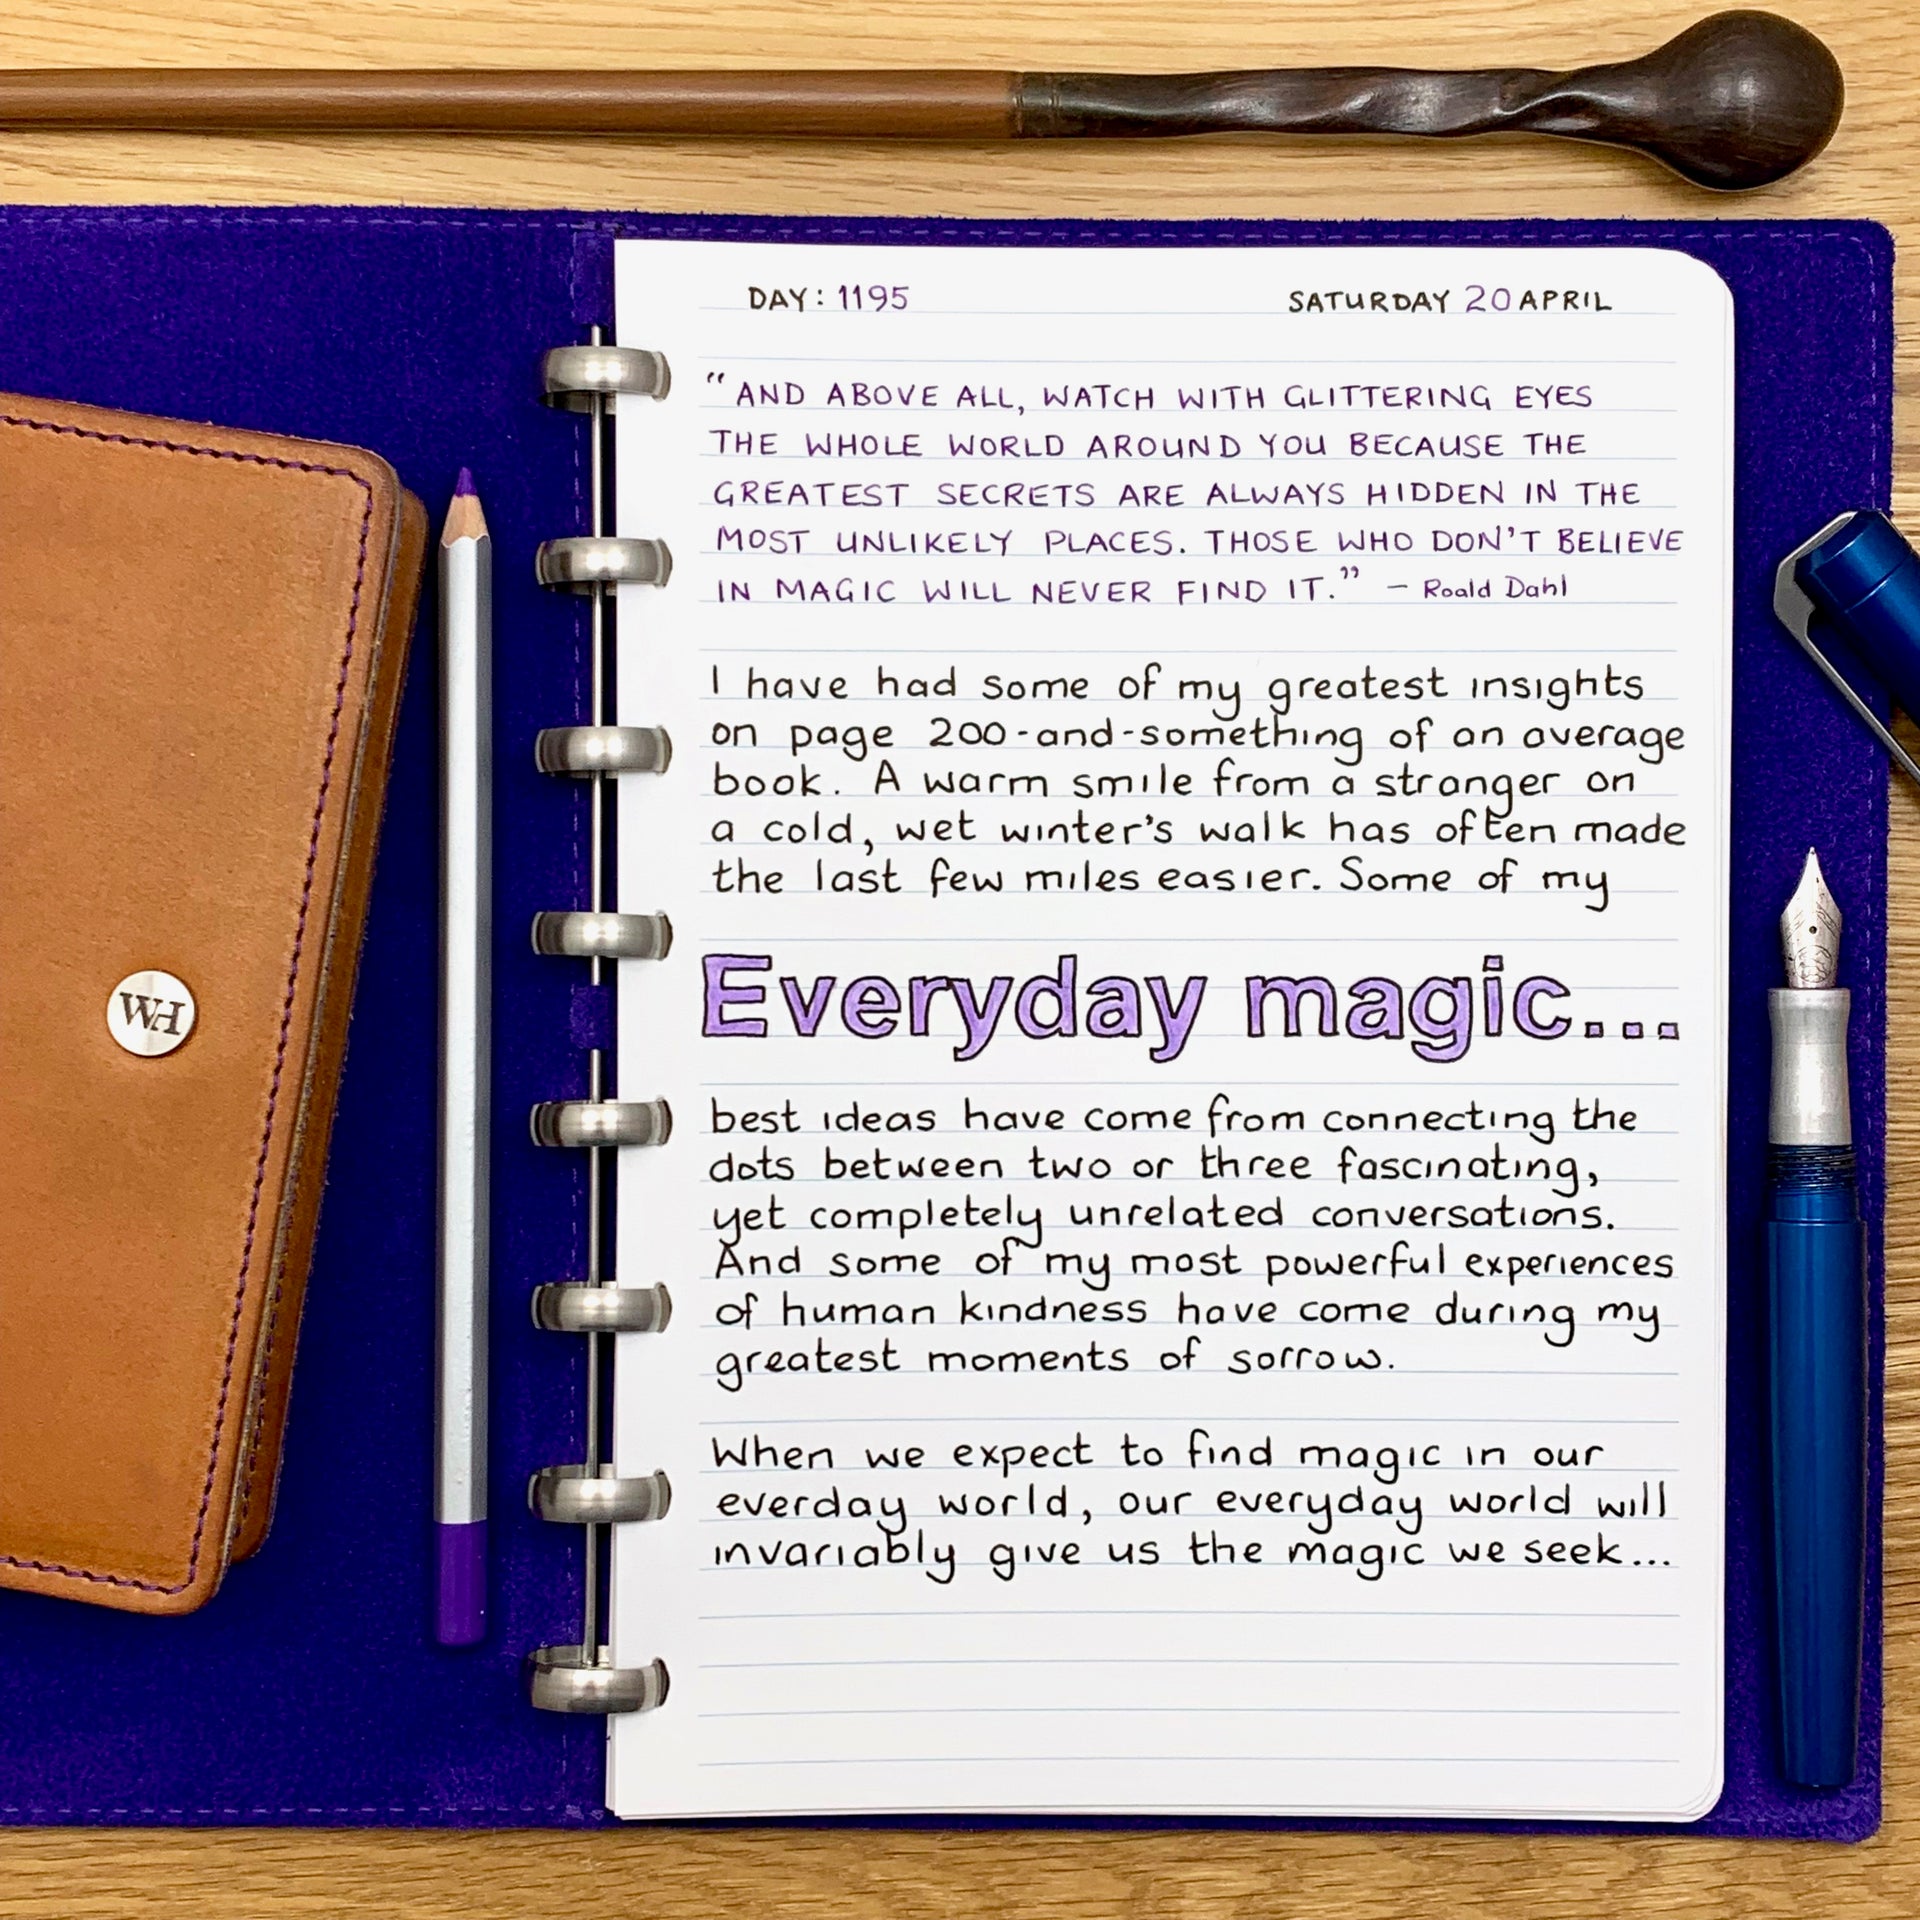 Everyday magic...